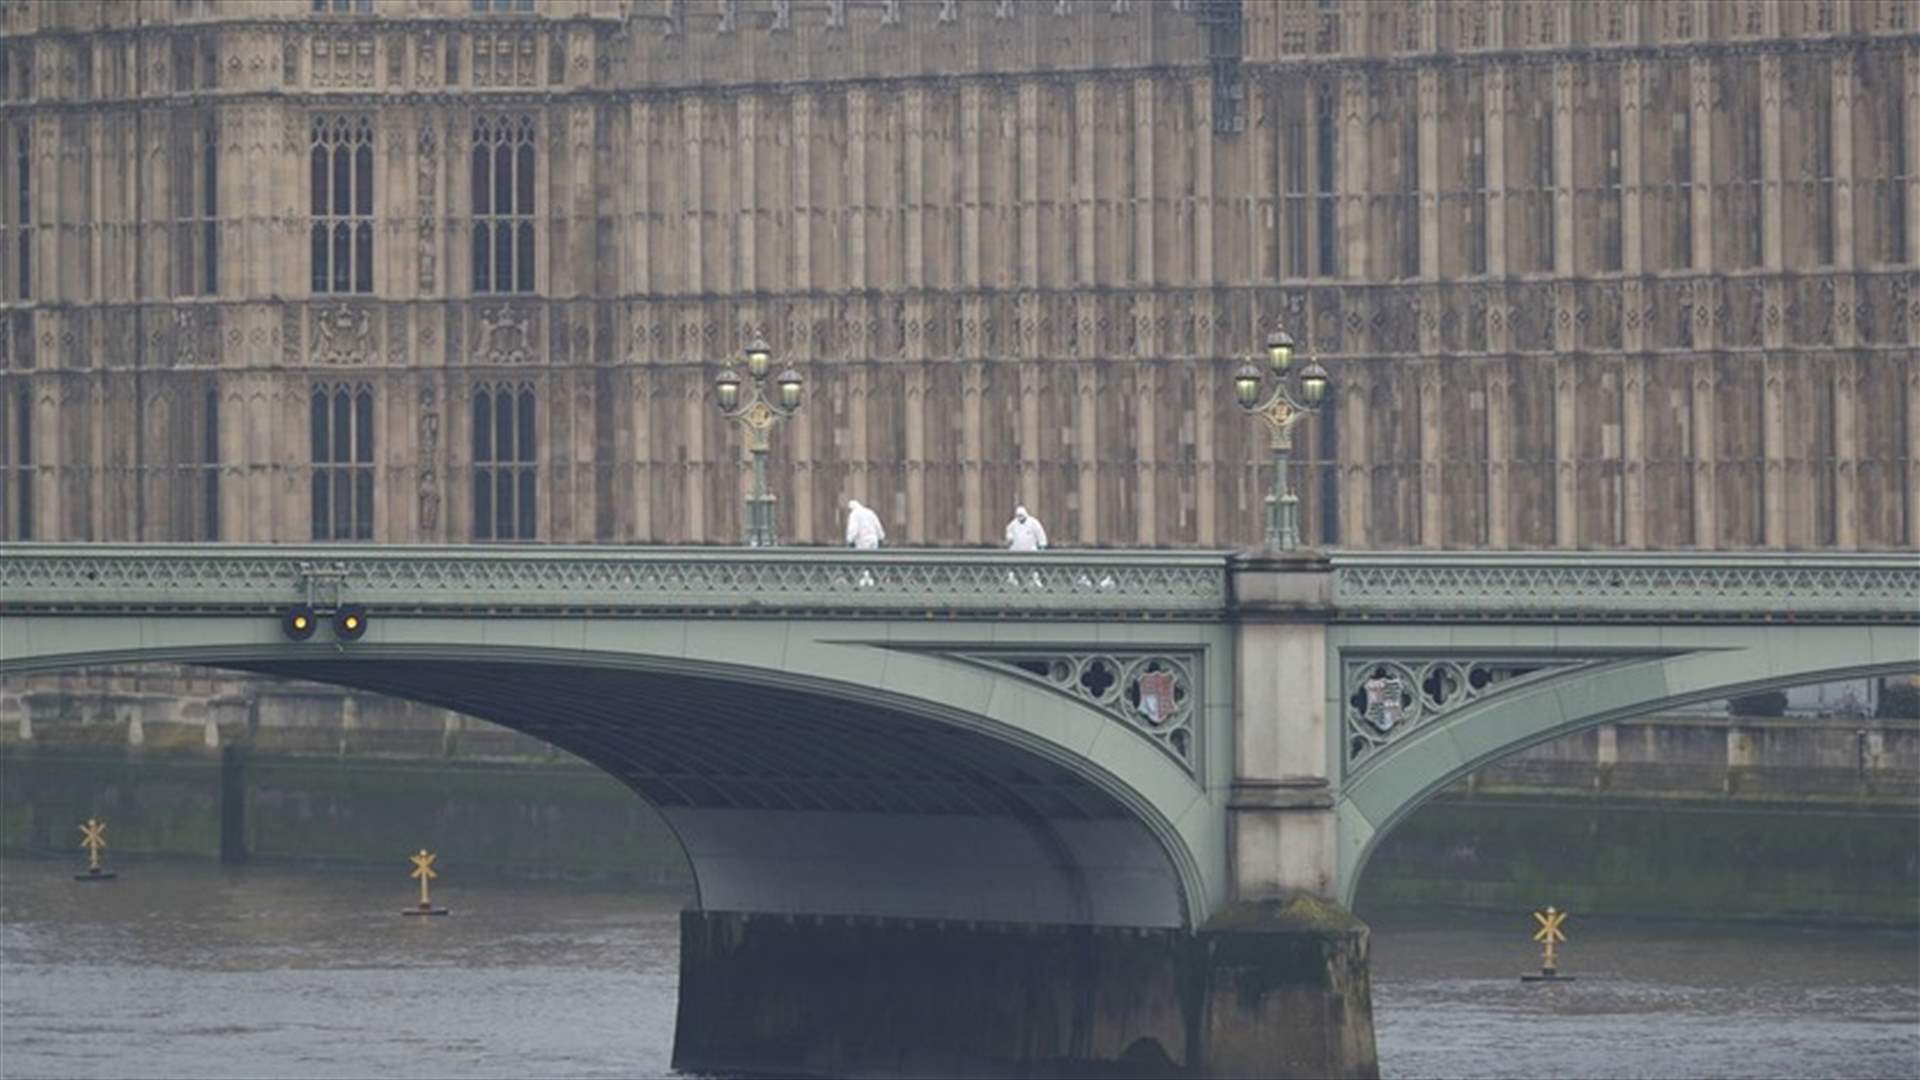 بالفيديو - لحظة سقوط امرأة عن جسر Westminster أثناء هجوم لندن أمس